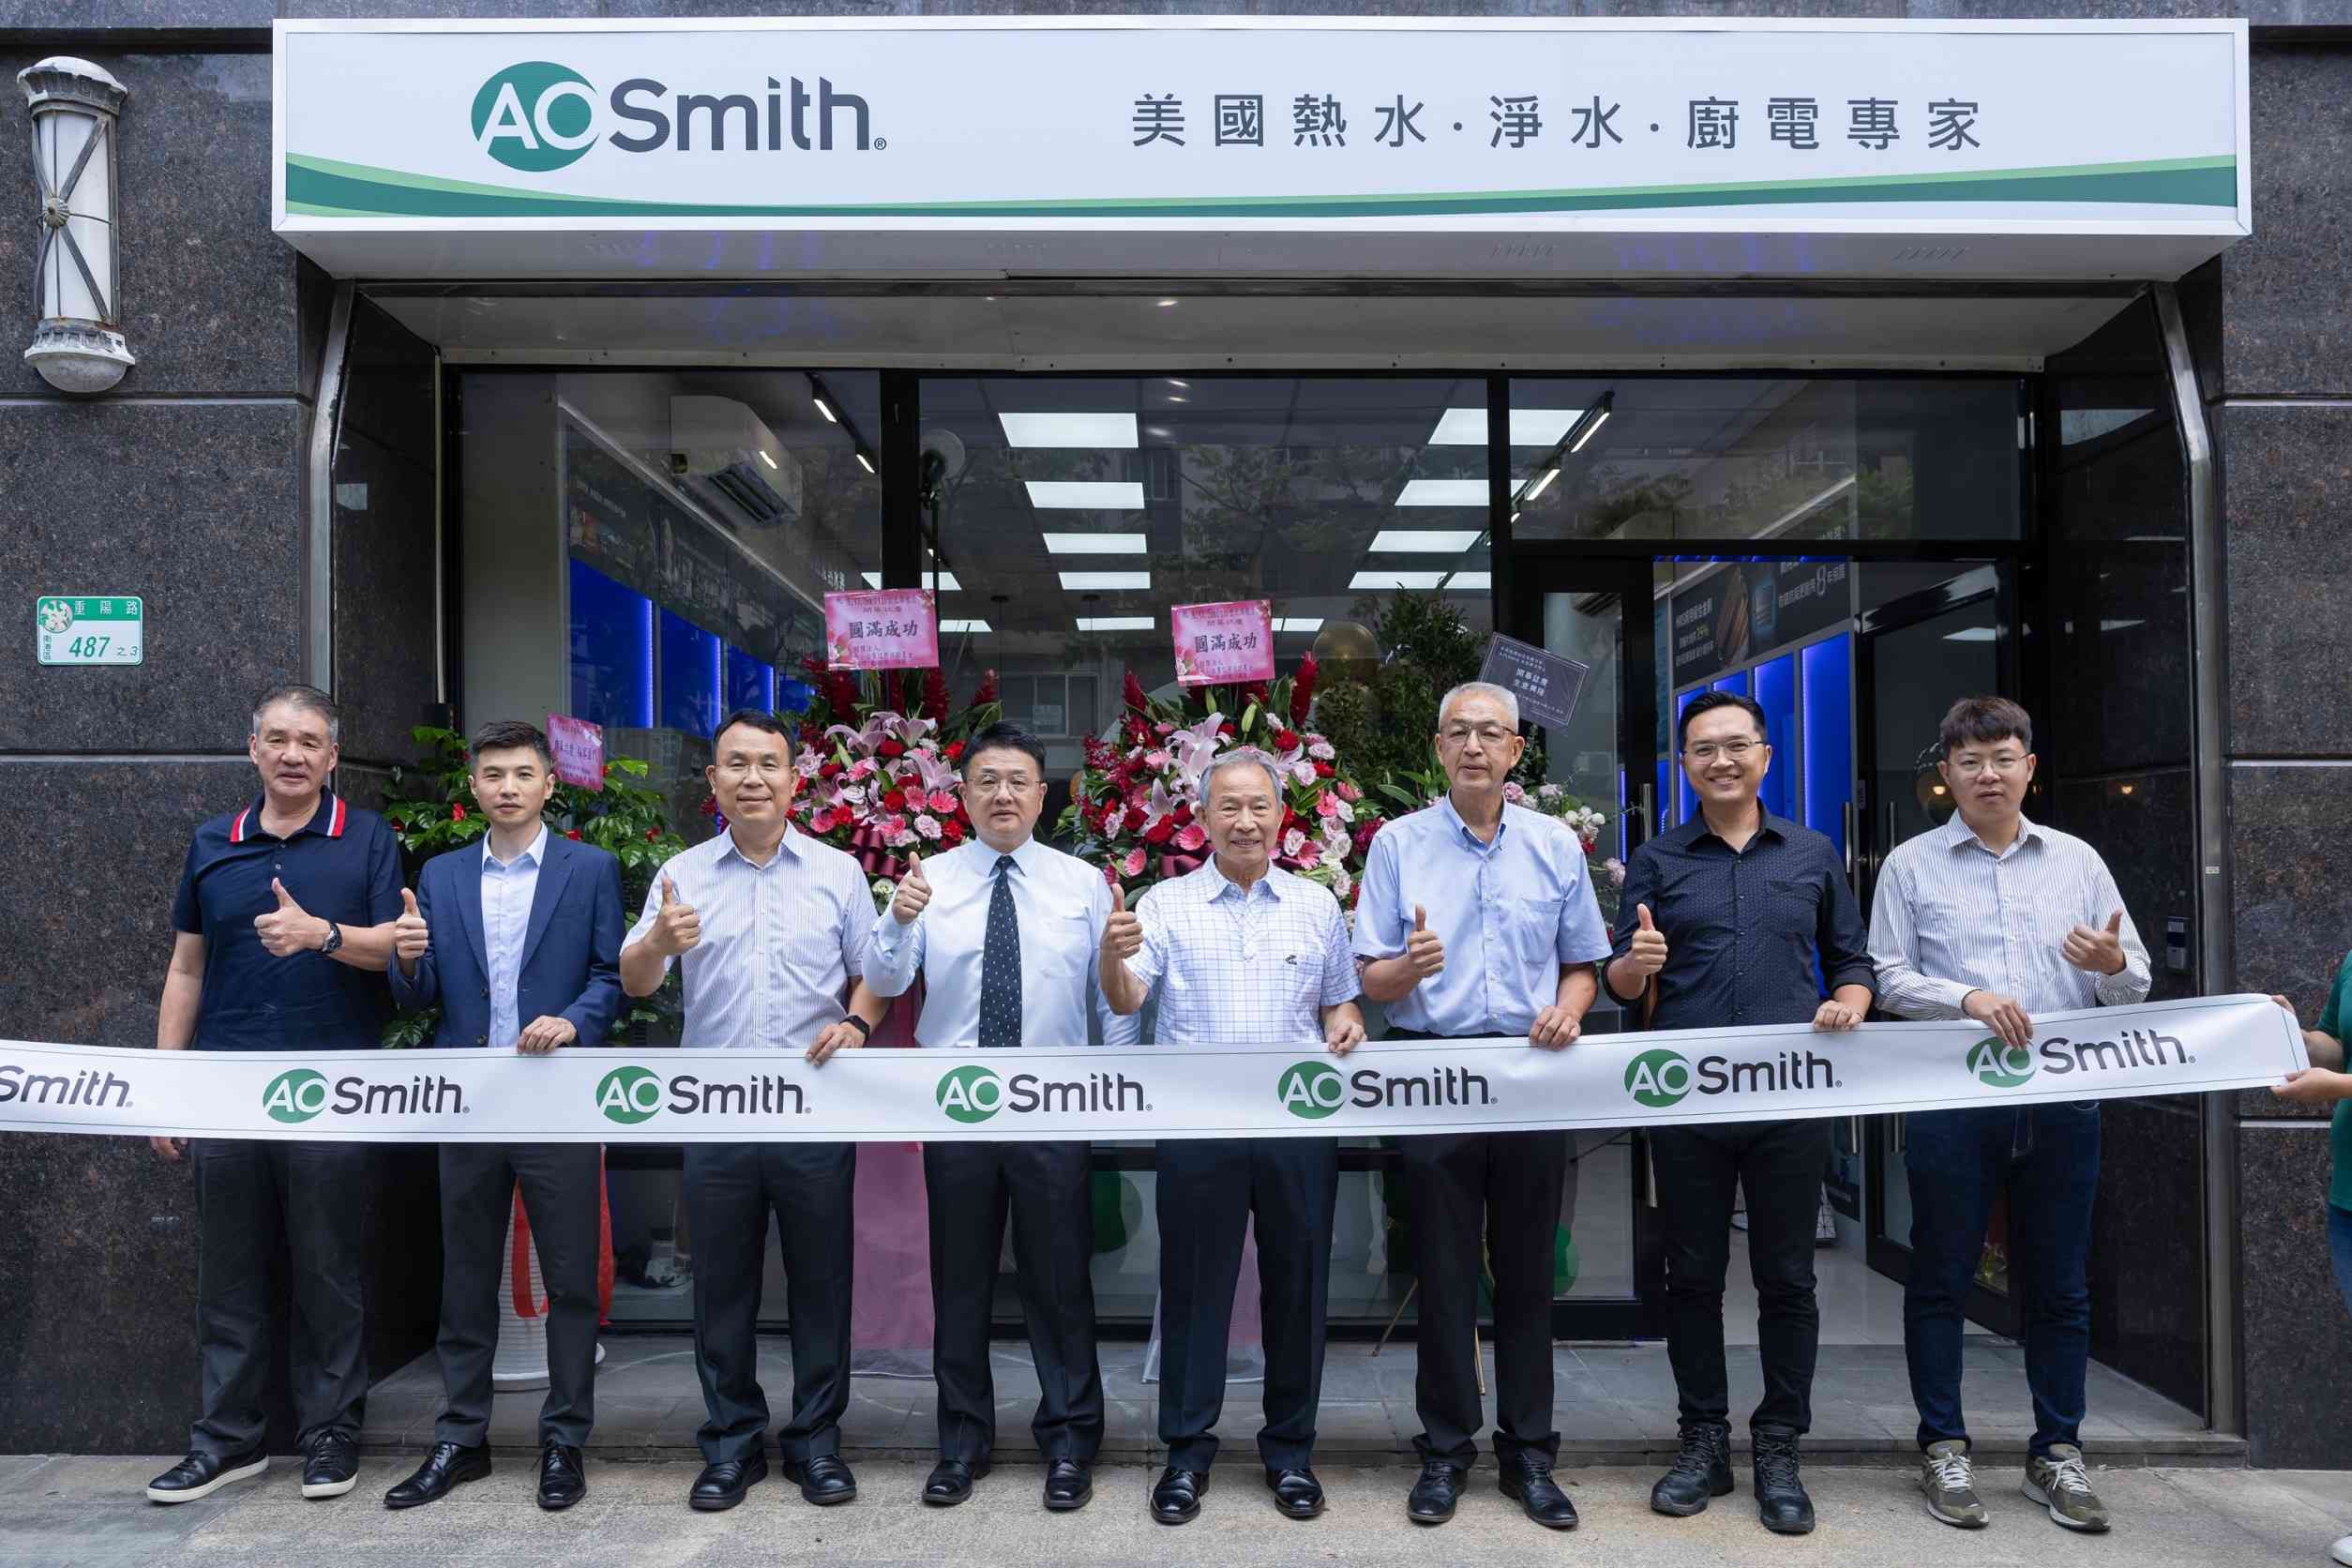 150年美國熱水器大廠A.O.SMITH  台北旗艦店開幕